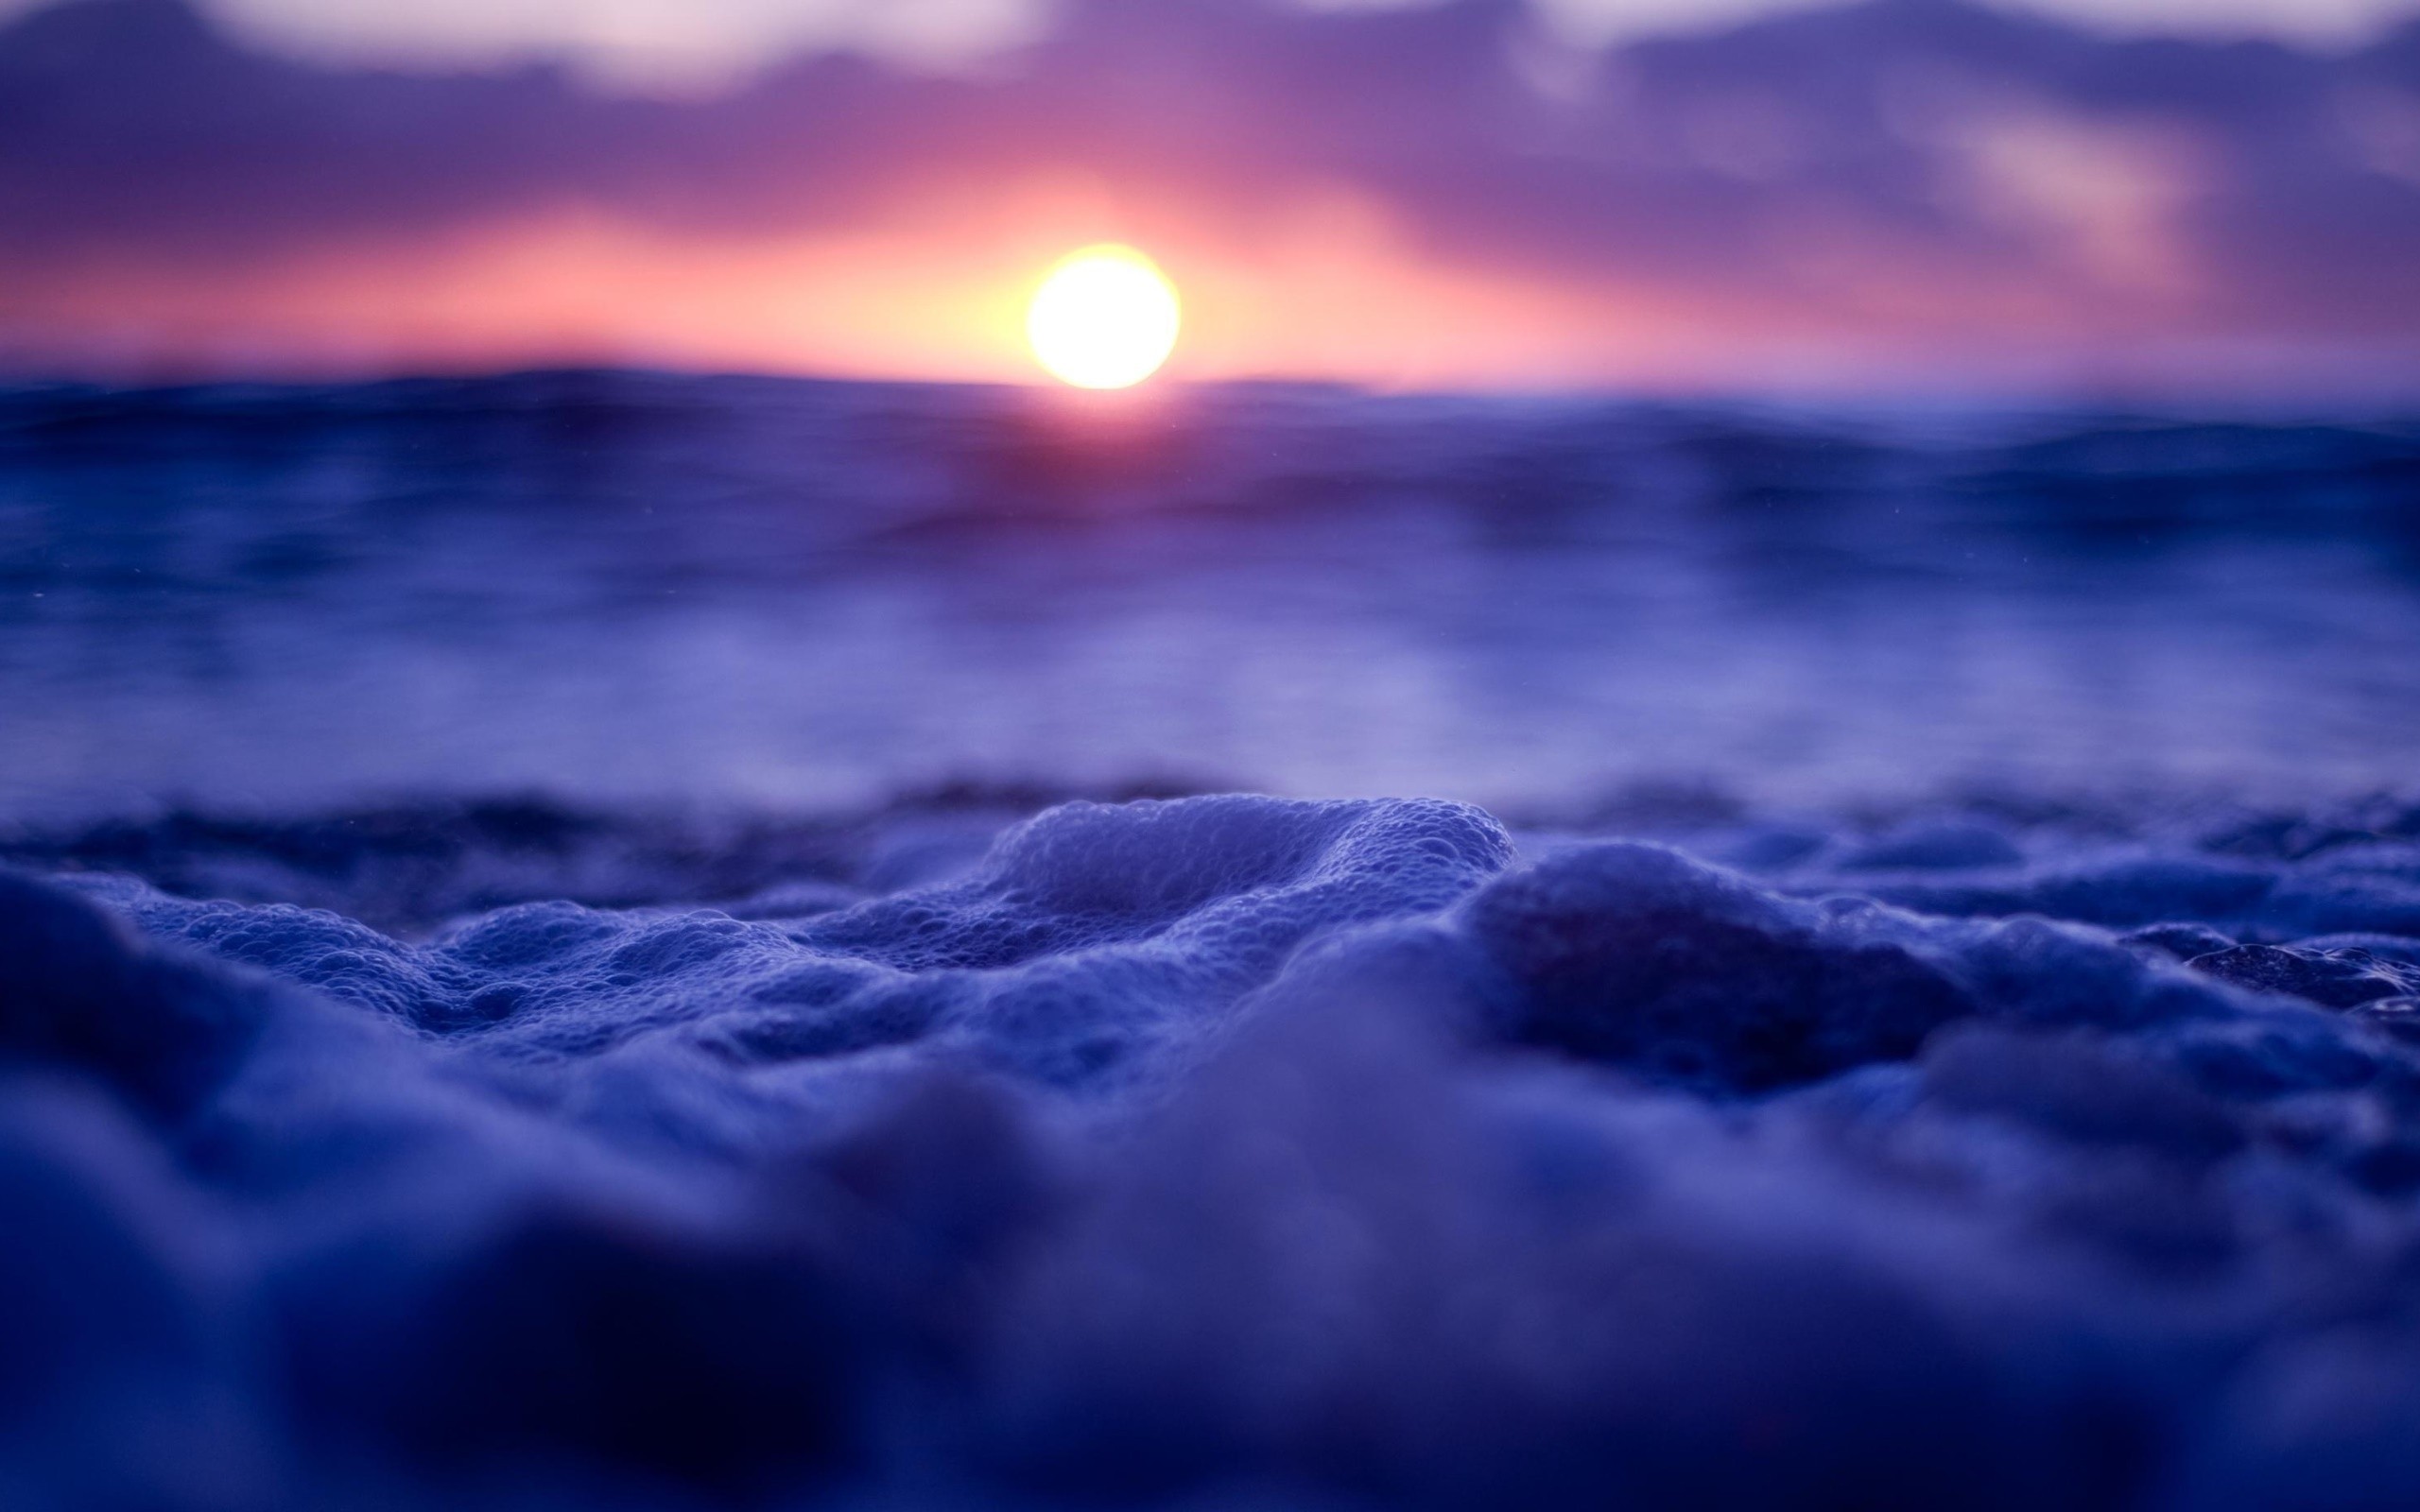 Sea foam at sunset